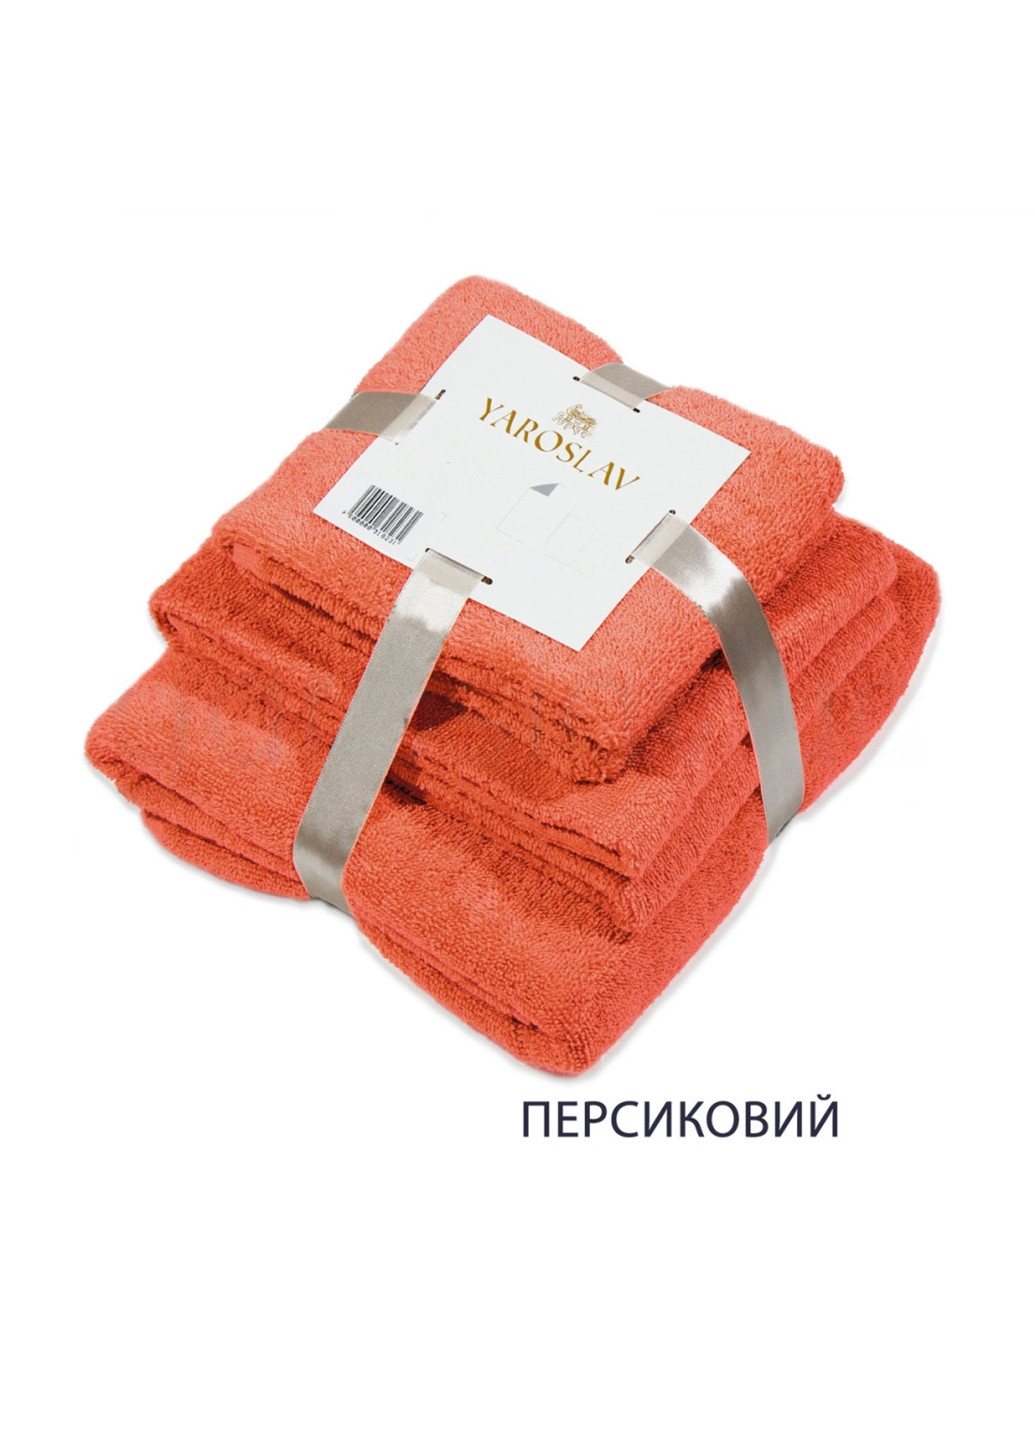 Ярослав набор полотенец яр-400 3 шт. однотонный персиковый производство - Украина